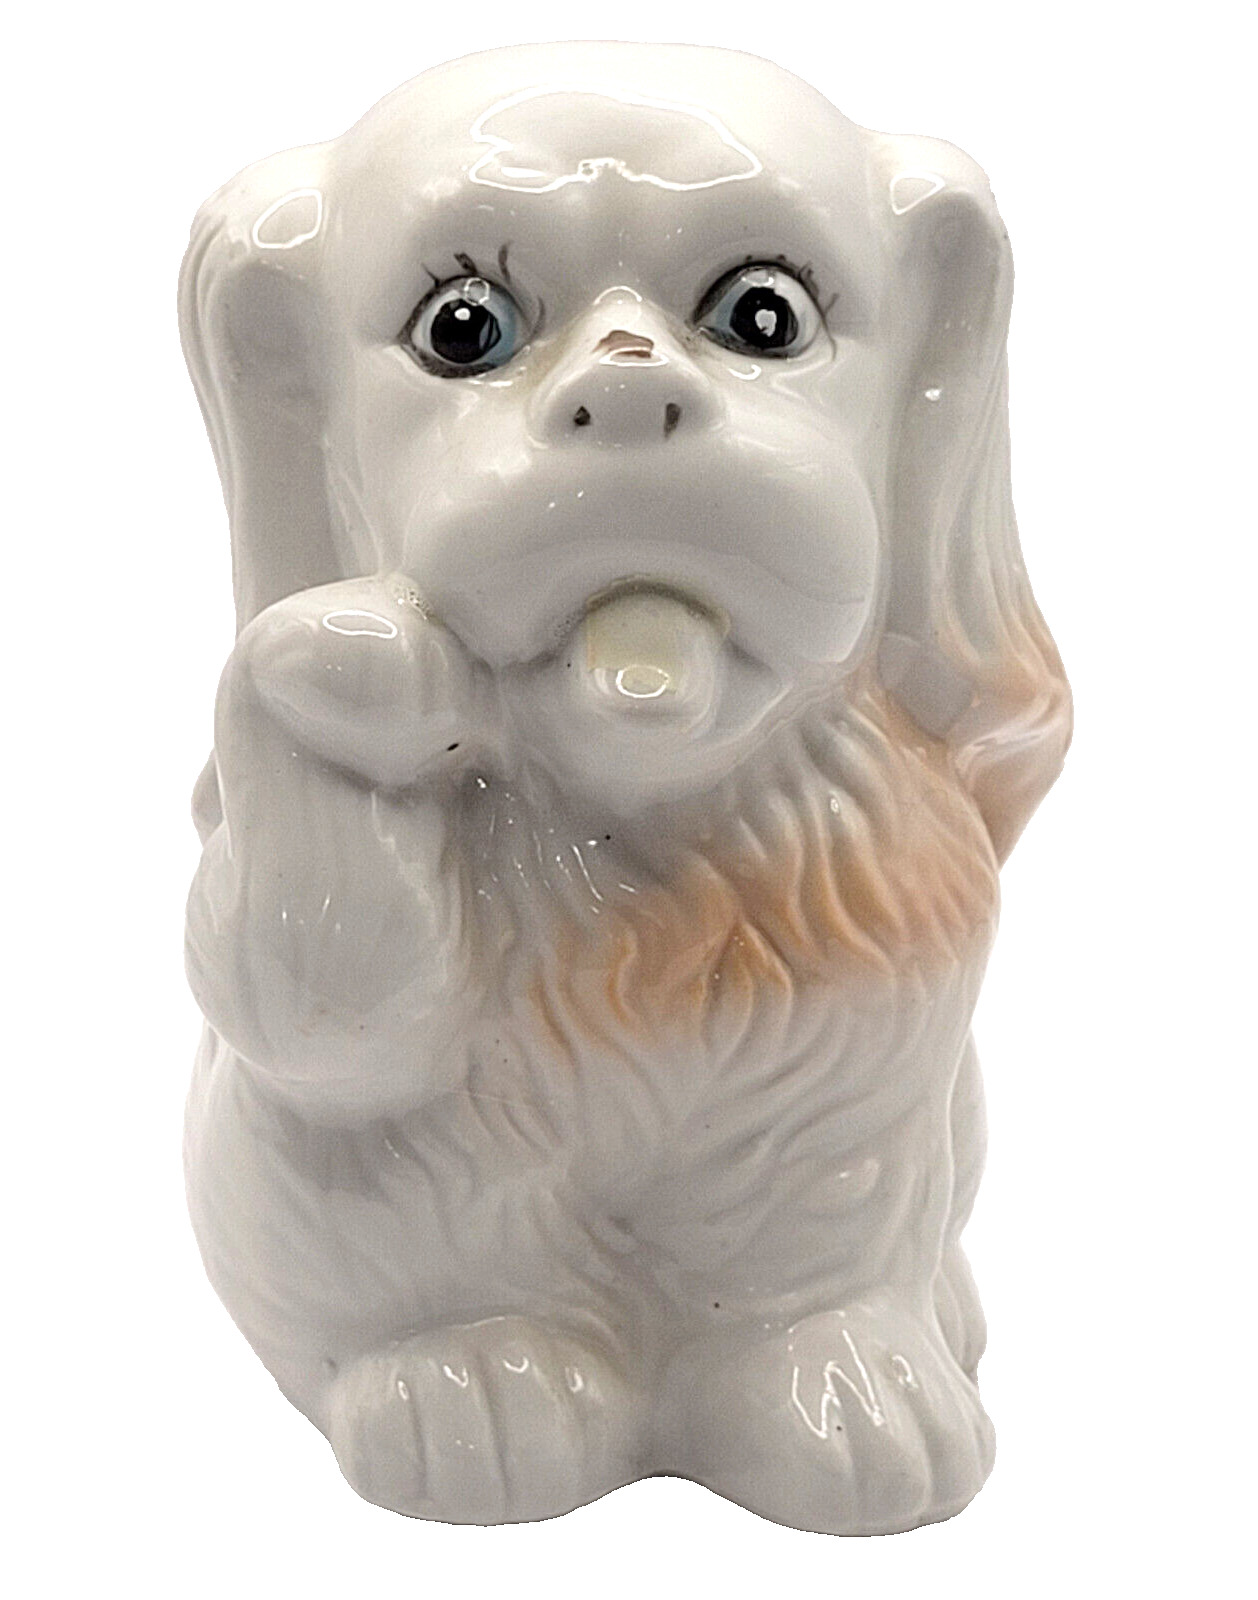 Pekingese Dog Ceramic Childrens Kids Savings Bank Collectible Vintage 1950s